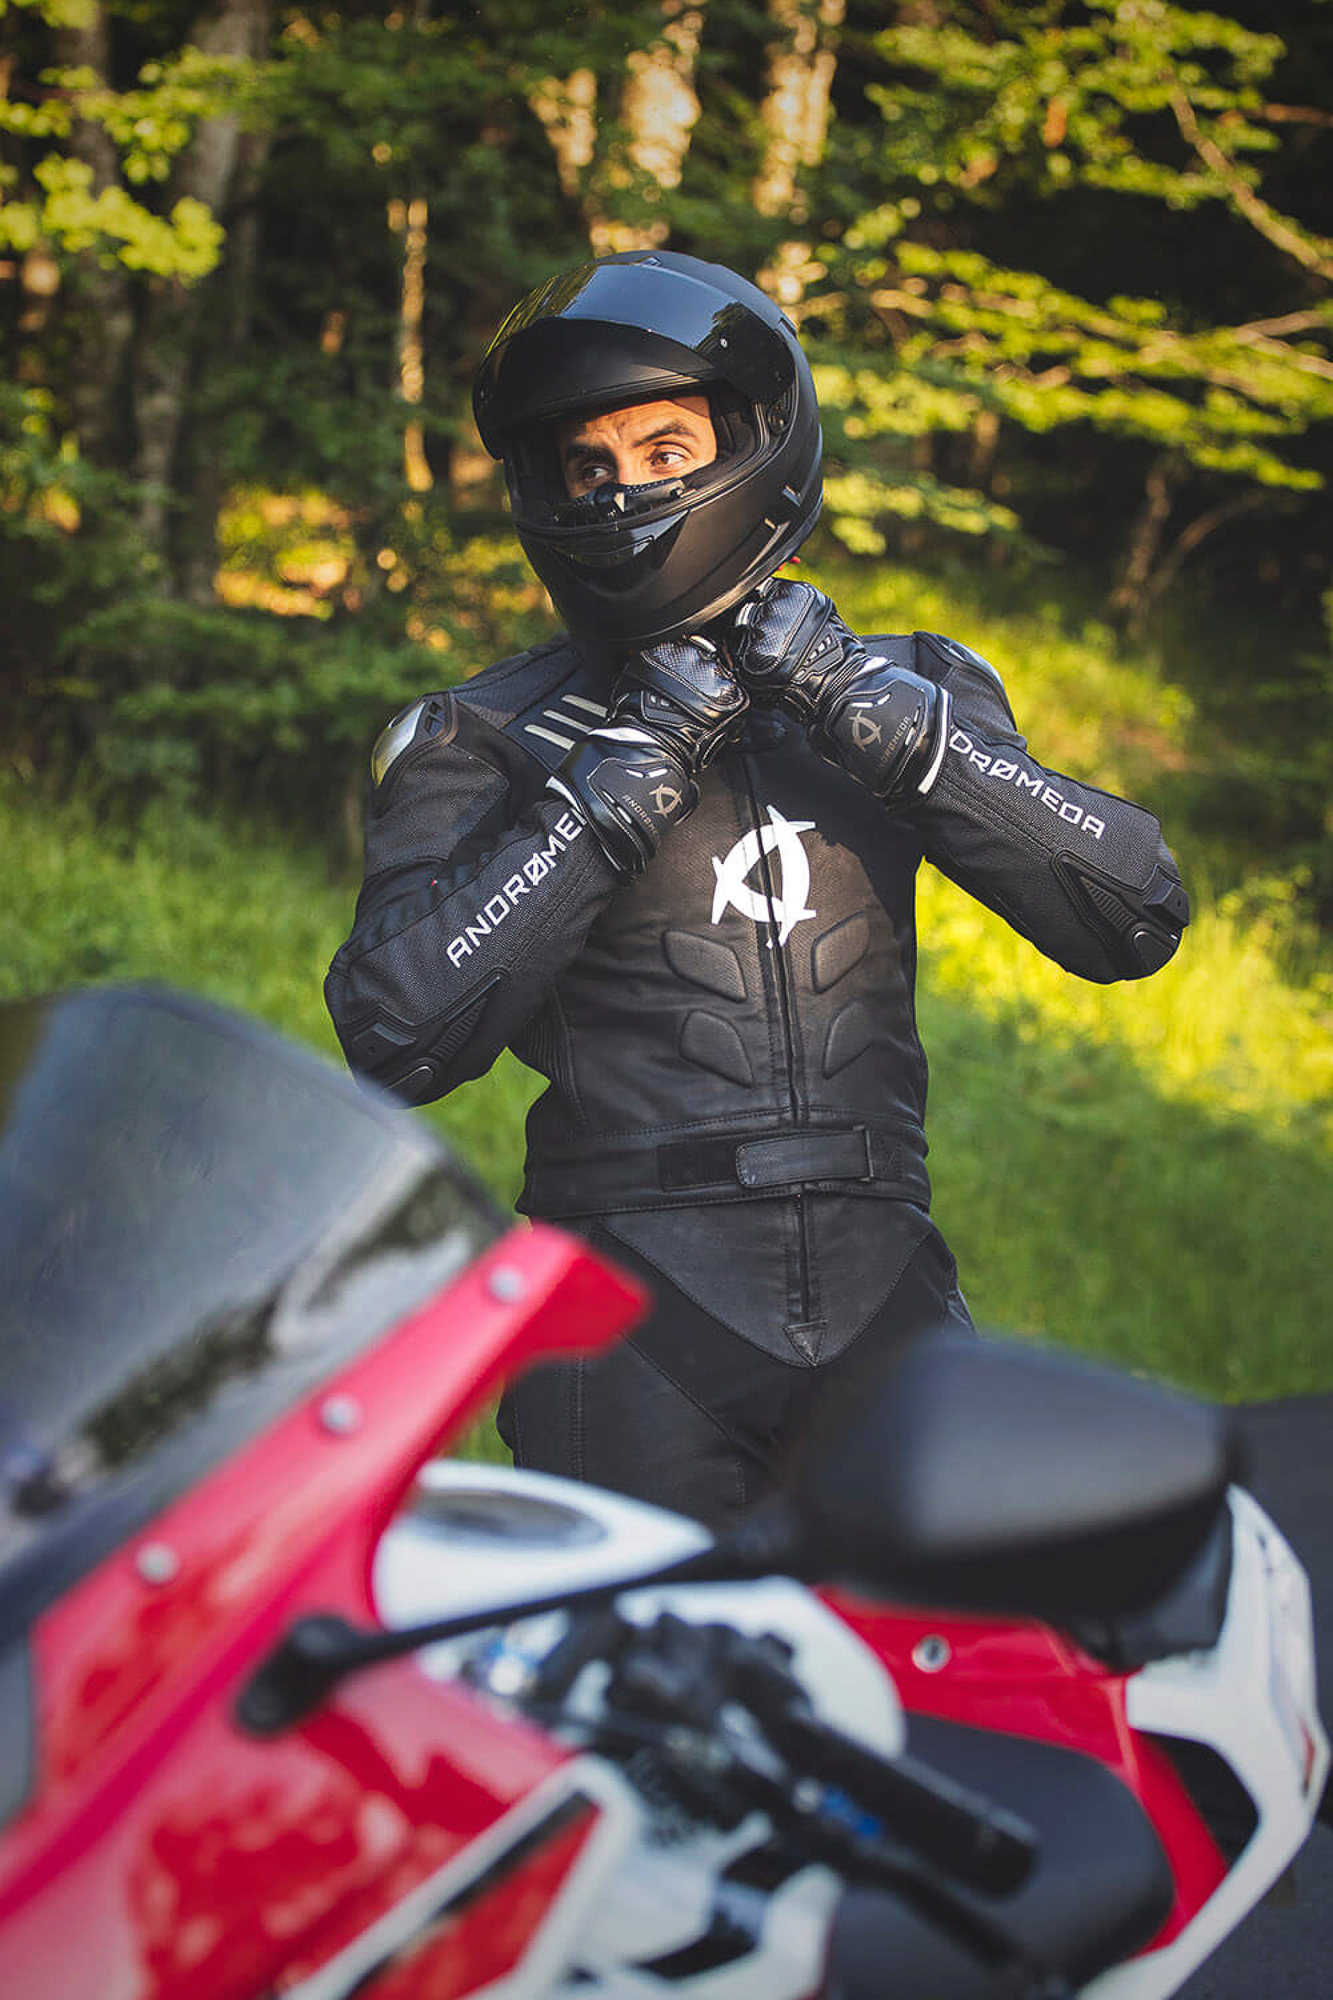 andromeda moto nearx vegan racing suit